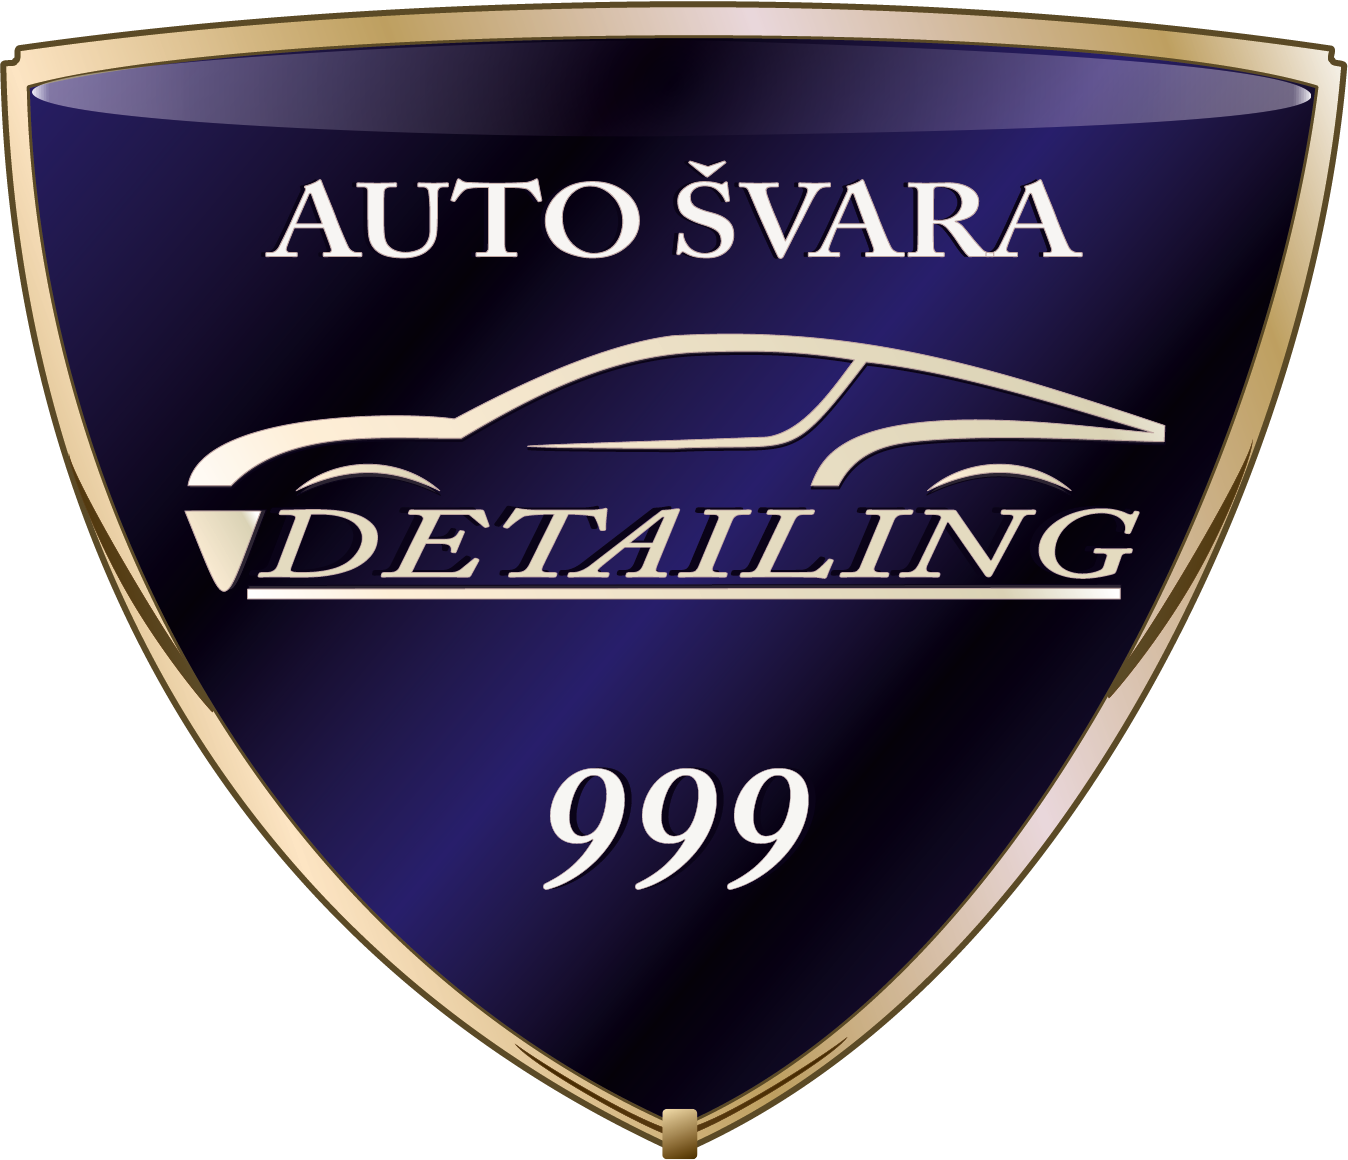 Auto Švara Detailing 999